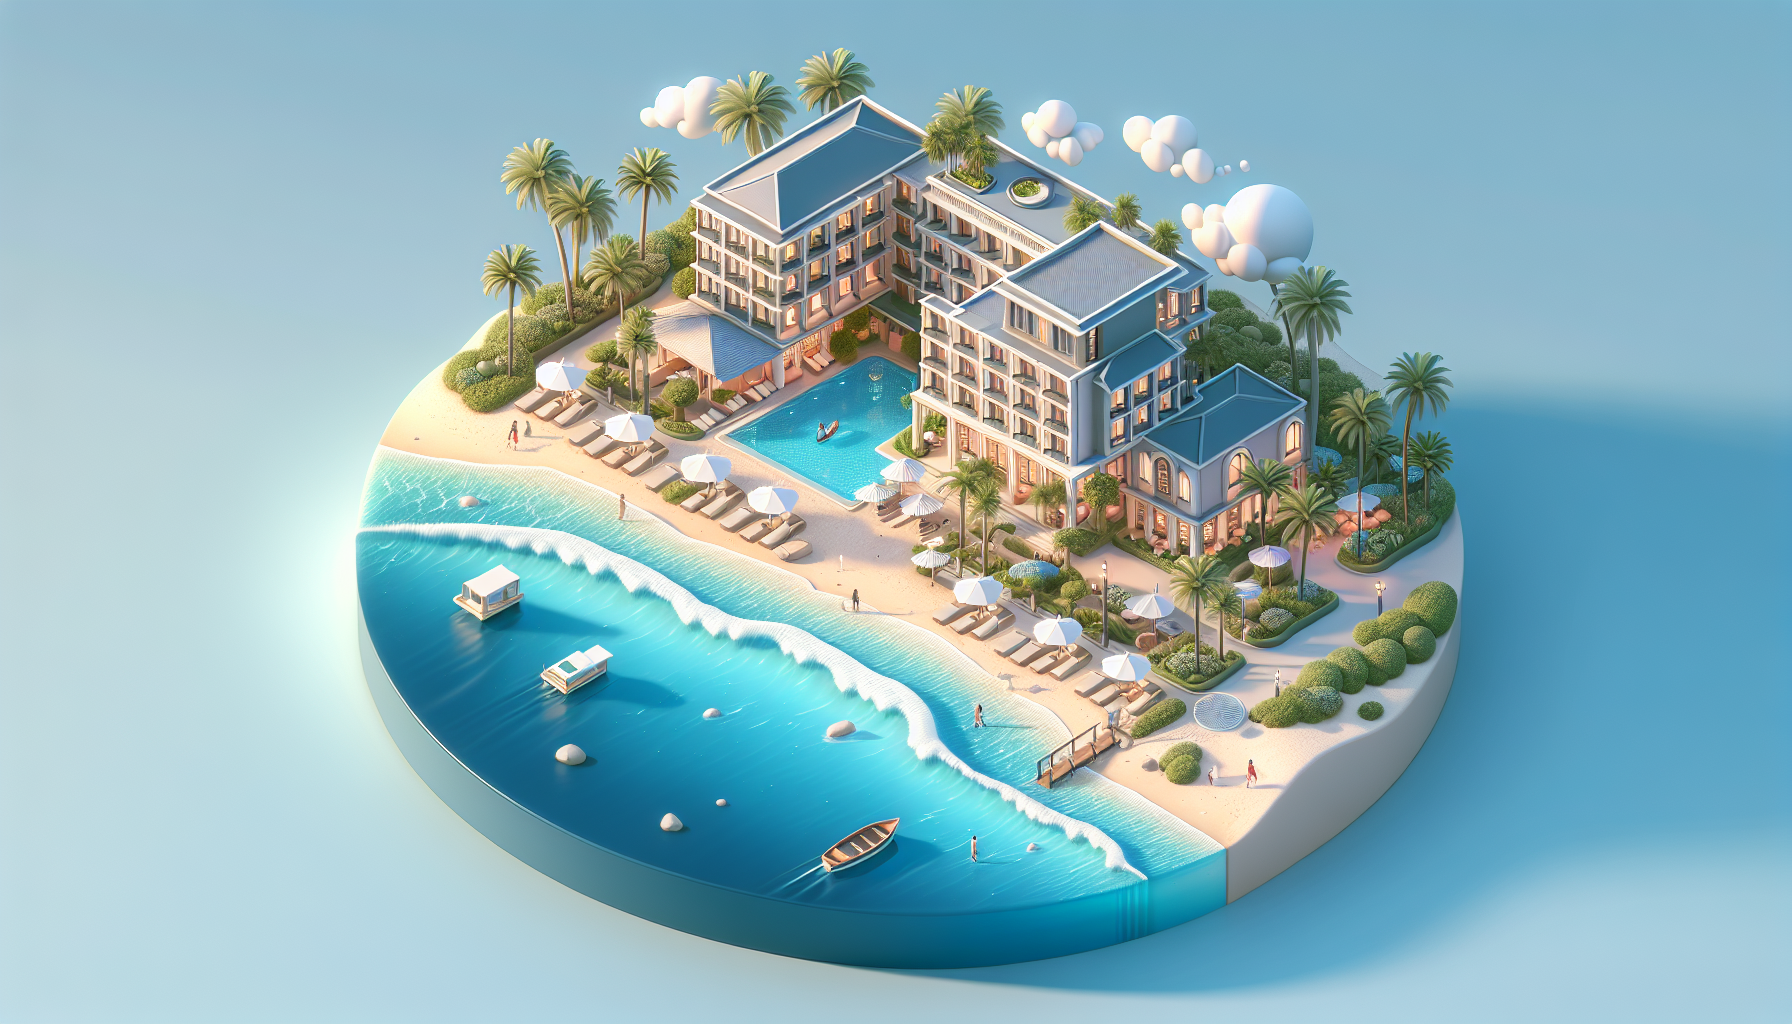 Khách sạn A: Tọa lạc tại bãi biển xanh mát, khách sạn A là một điểm đến lý tưởng cho những ai yêu thích biển cả. Với phòng nghỉ sang trọng và tiện nghi, du khách sẽ có trải nghiệm thú vị và thoải mái.